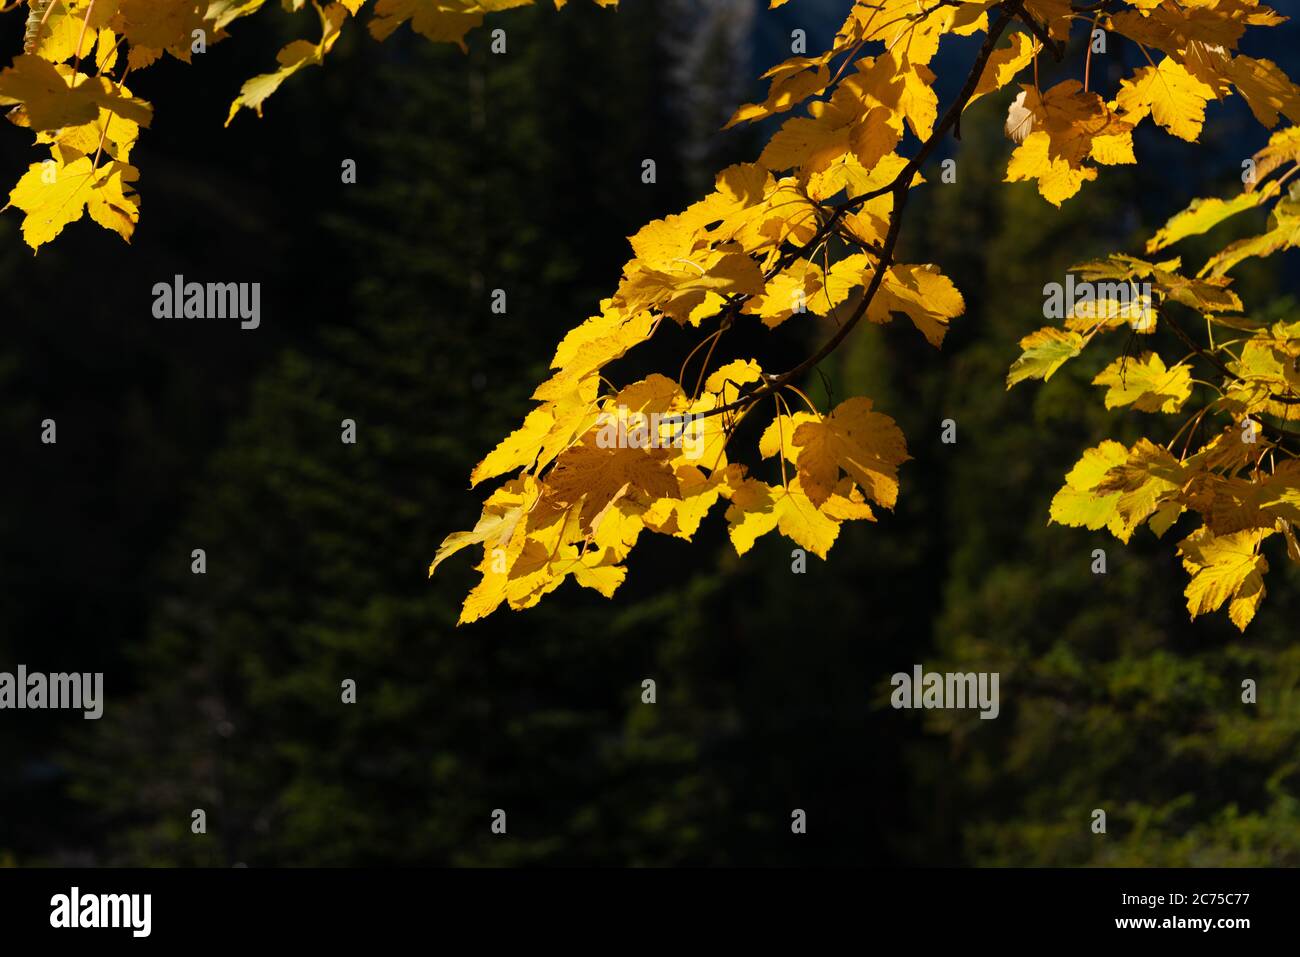 Autumn in the Karwendel mountains, tirol, Austria Stock Photo